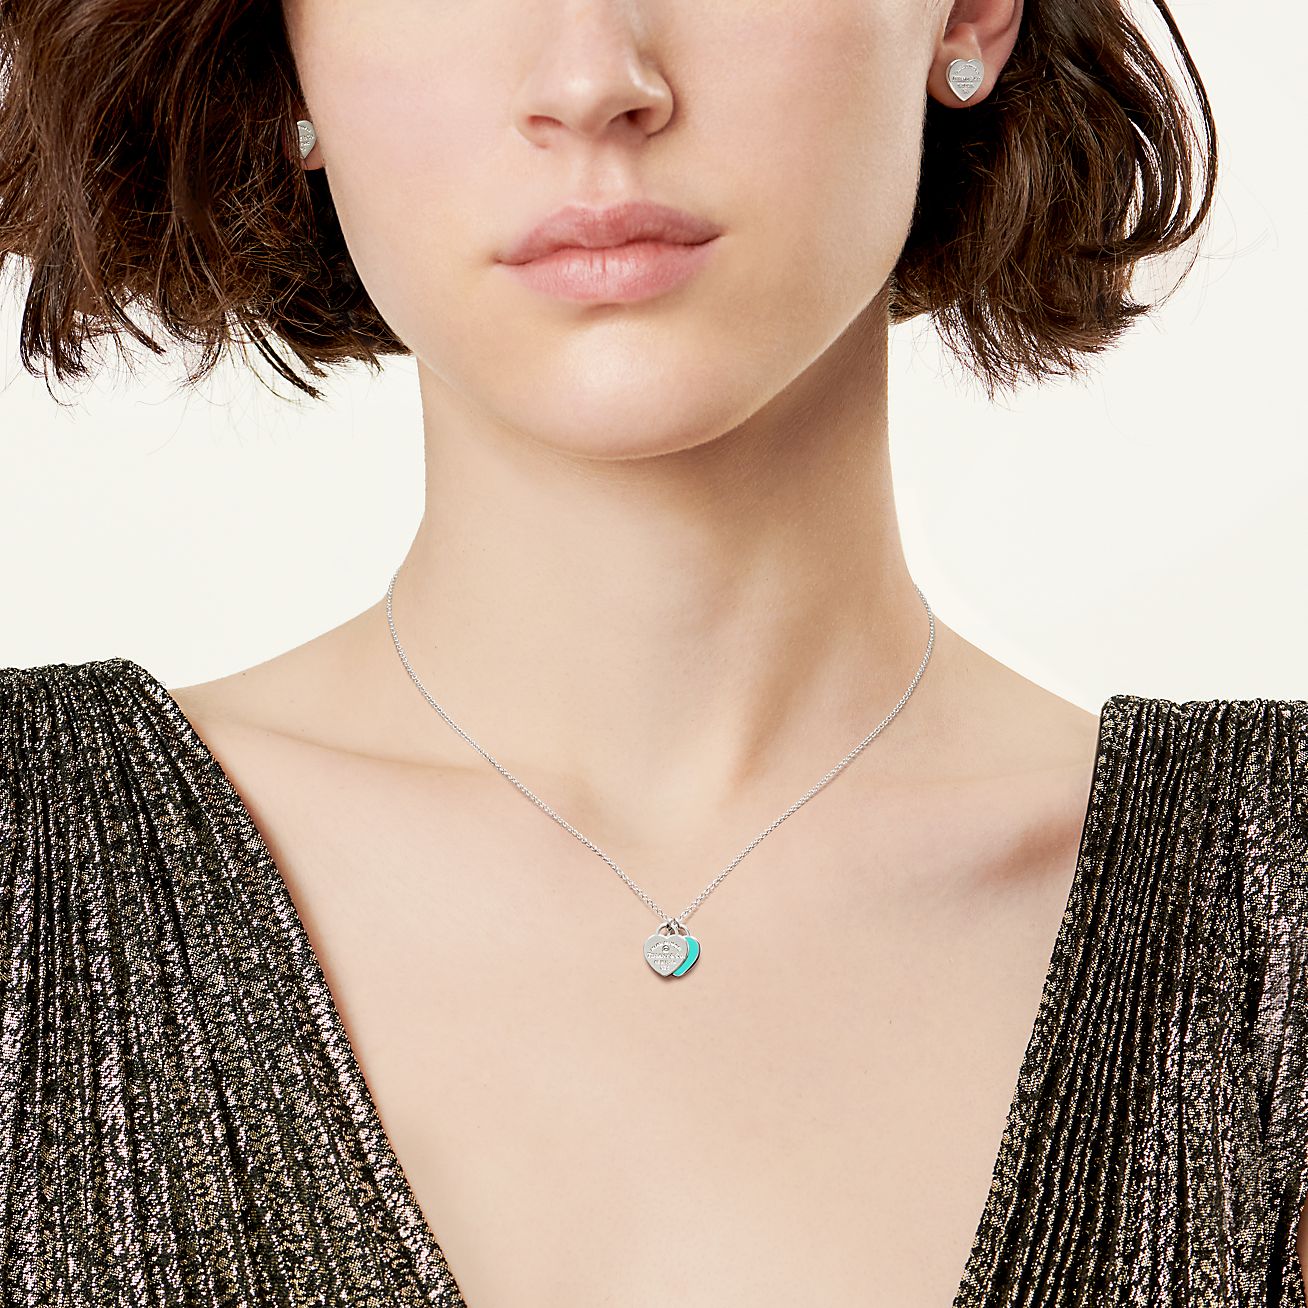 White Gold Mini Heart Necklace for Women | Jennifer Meyer